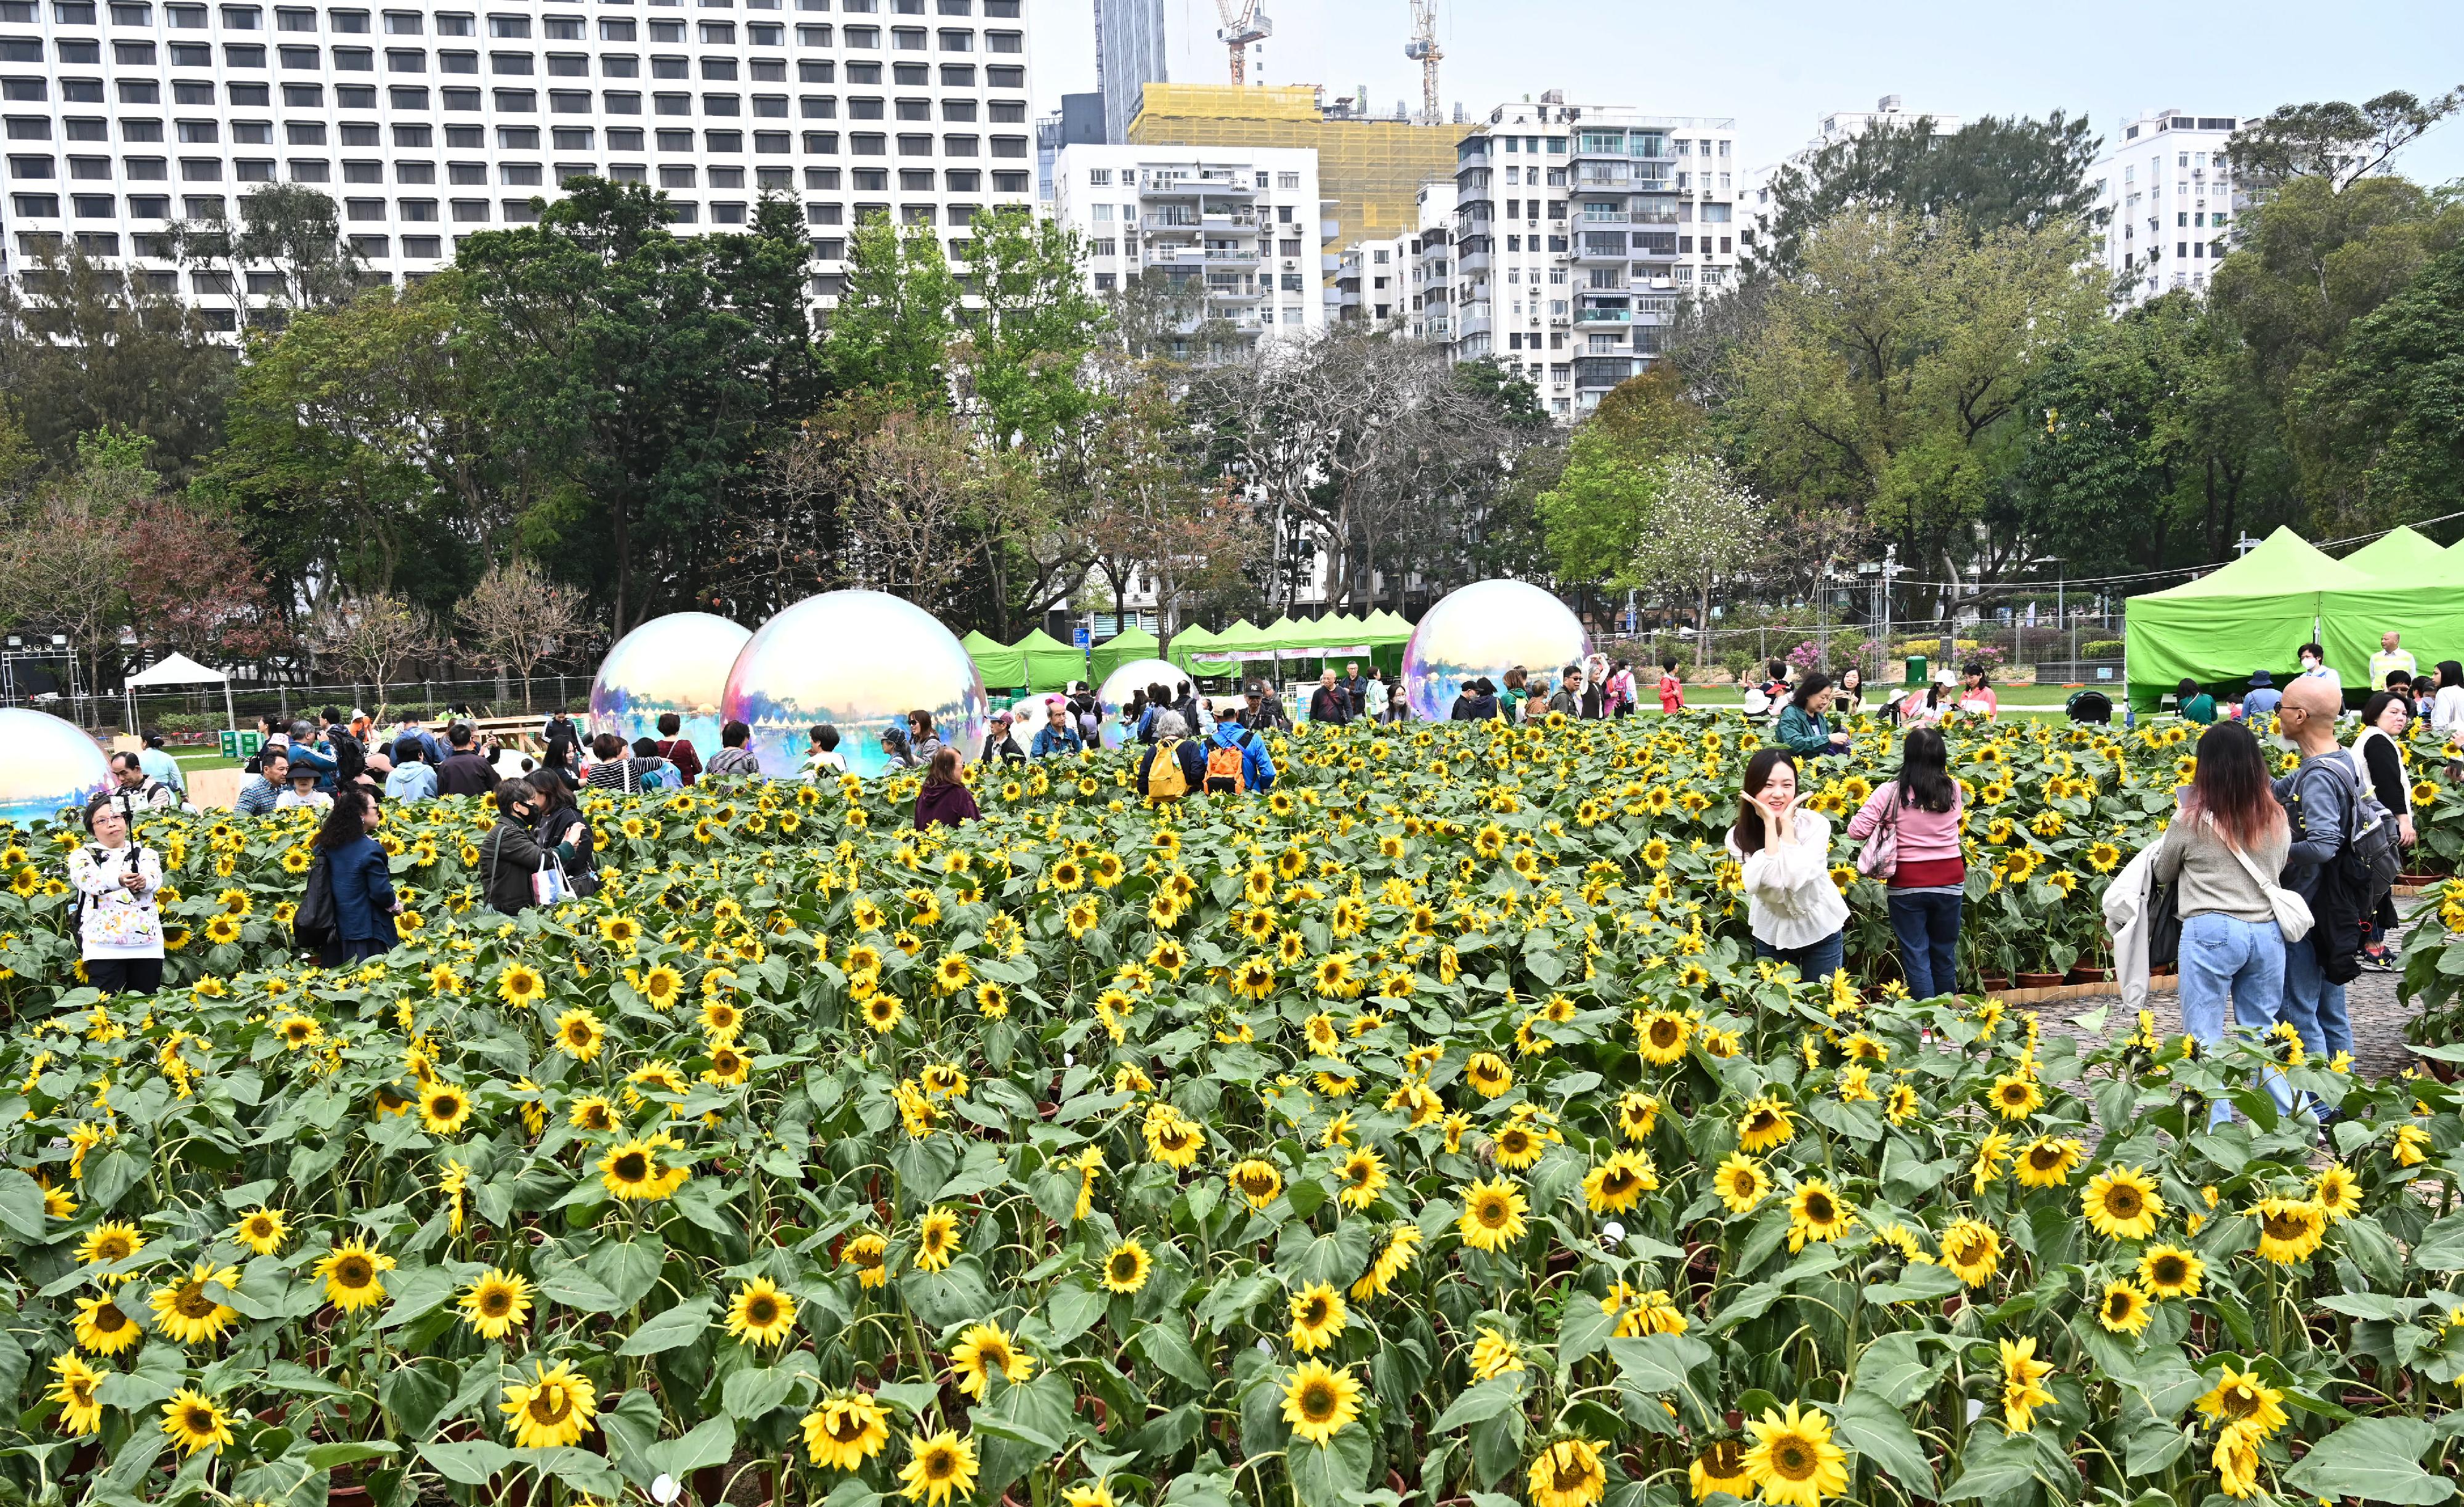 每年一度的賞花盛事香港花卉展覽今日（三月十五日）在維多利亞公園開幕，展出約四十二萬株花卉，包括約四萬株主題花香彩雀。向日葵花海內種有超過五千株花，成為拍照熱點。